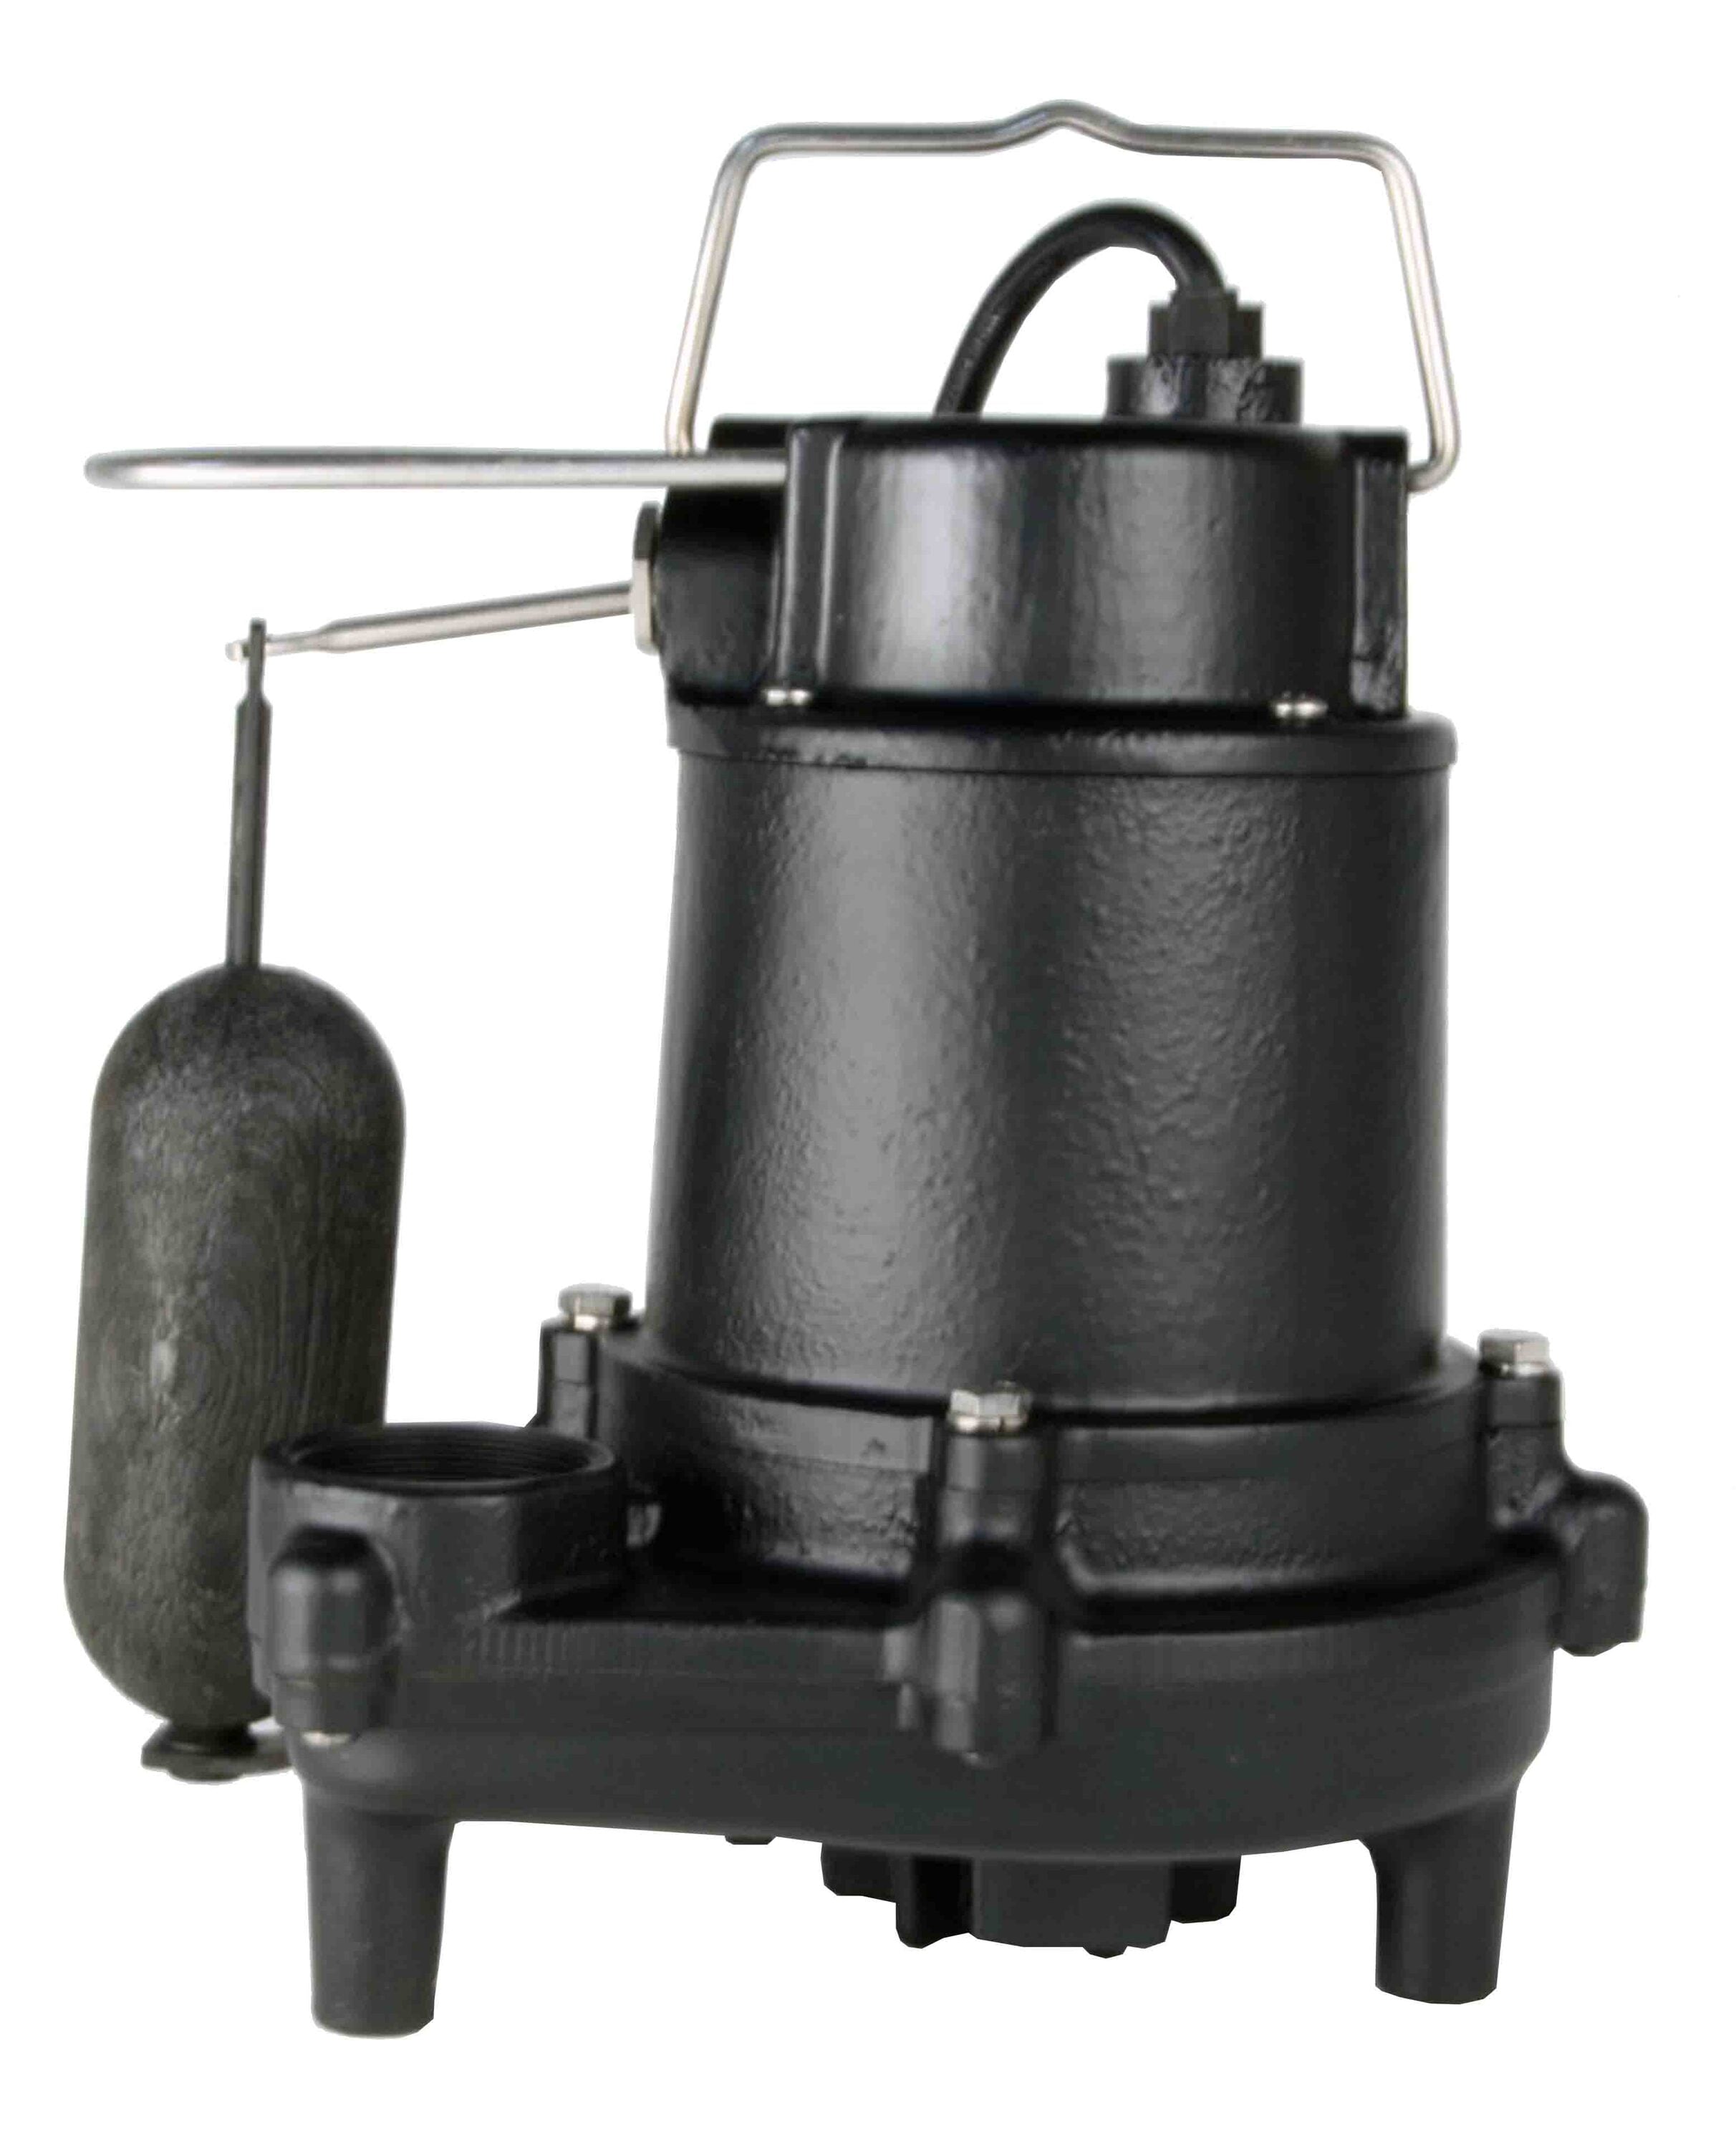 Utilitech Pro 115-Volt Cast Iron Submersible Sump Pump at